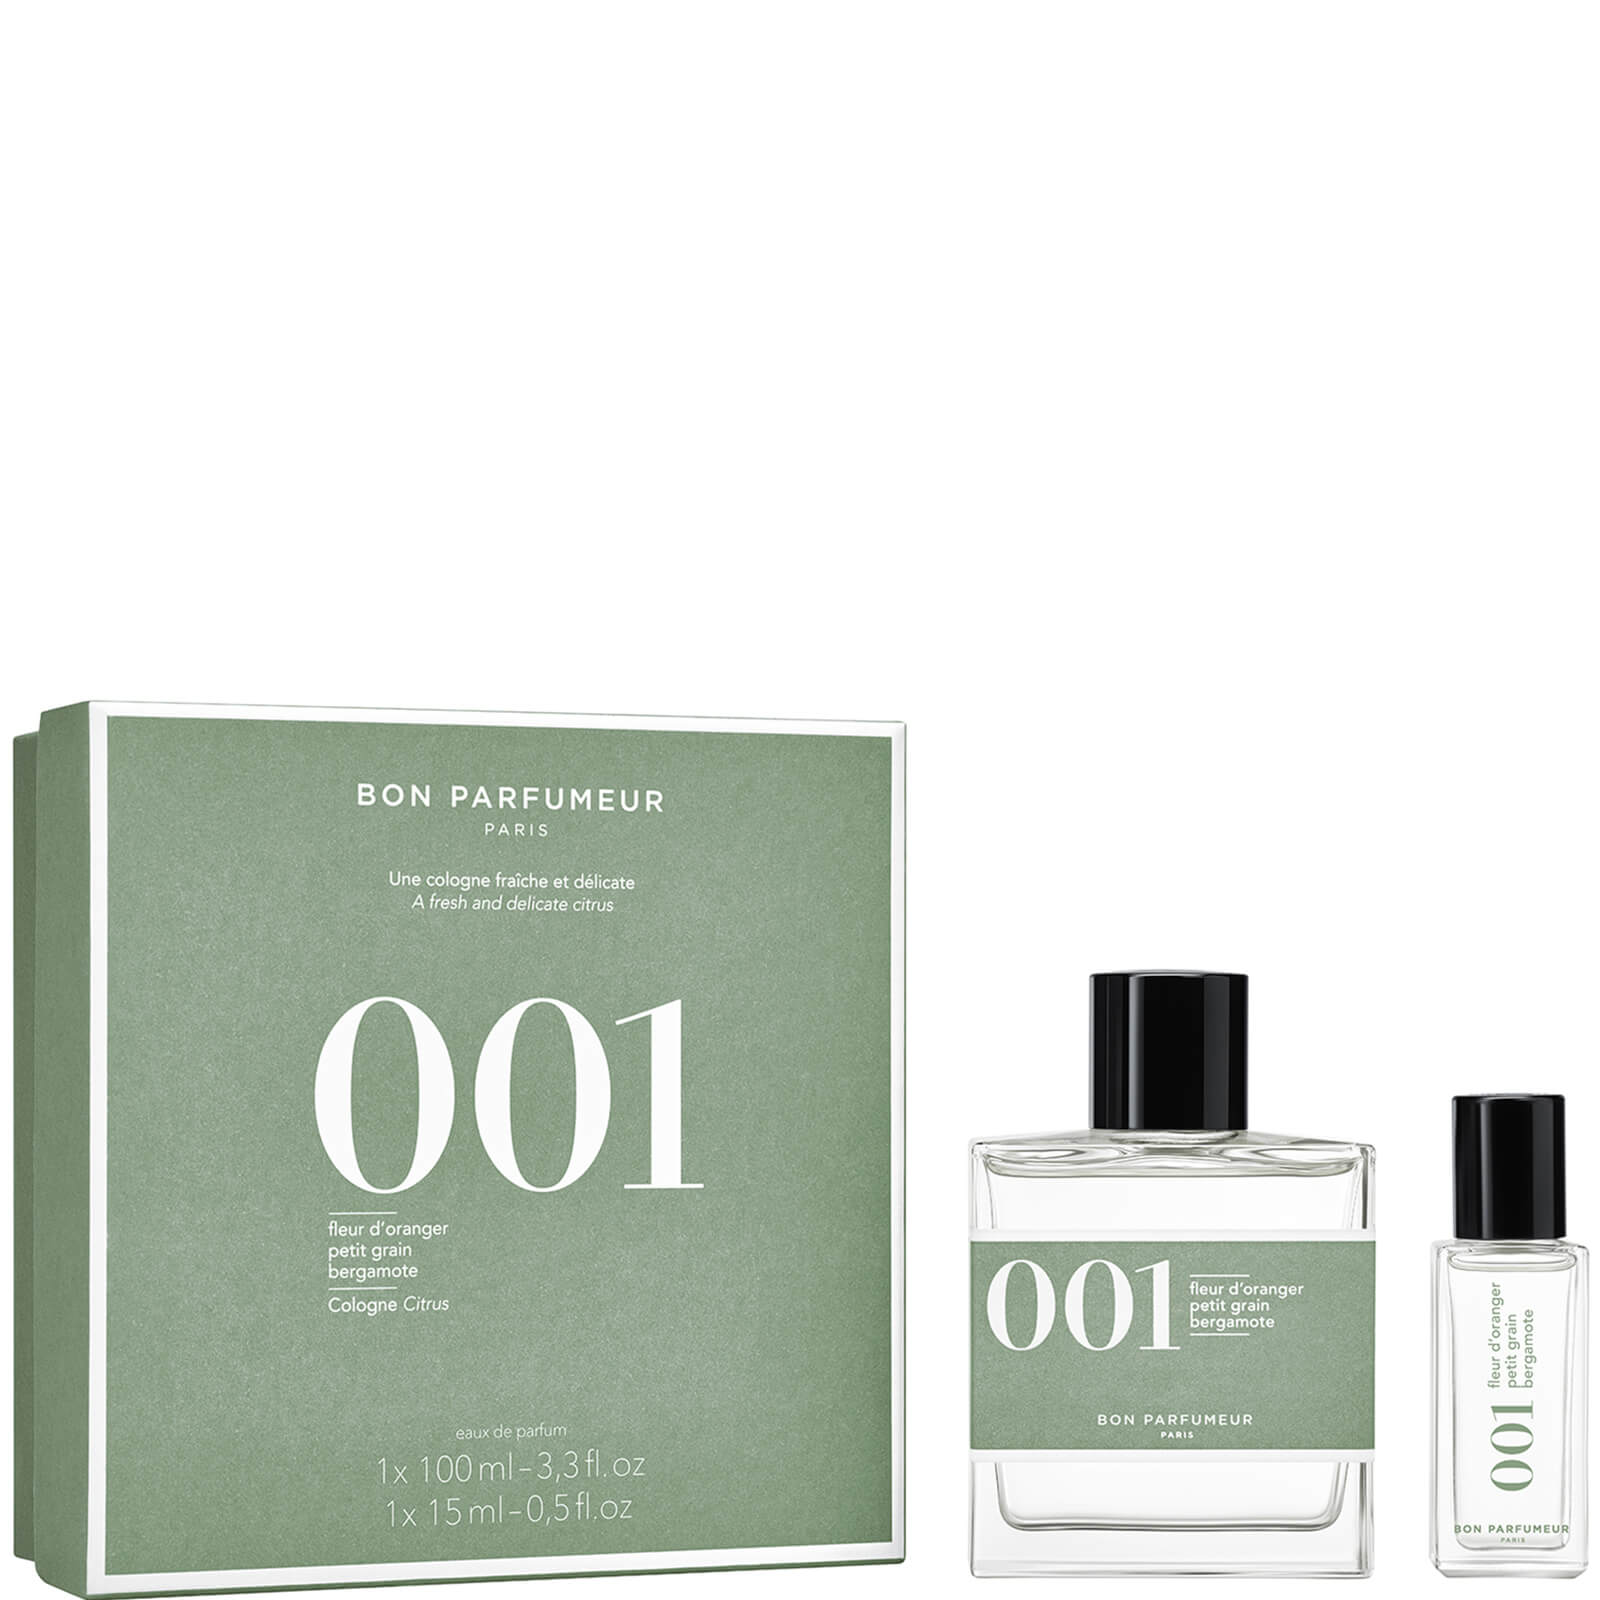 Bon Parfumeur Limited Edition Set